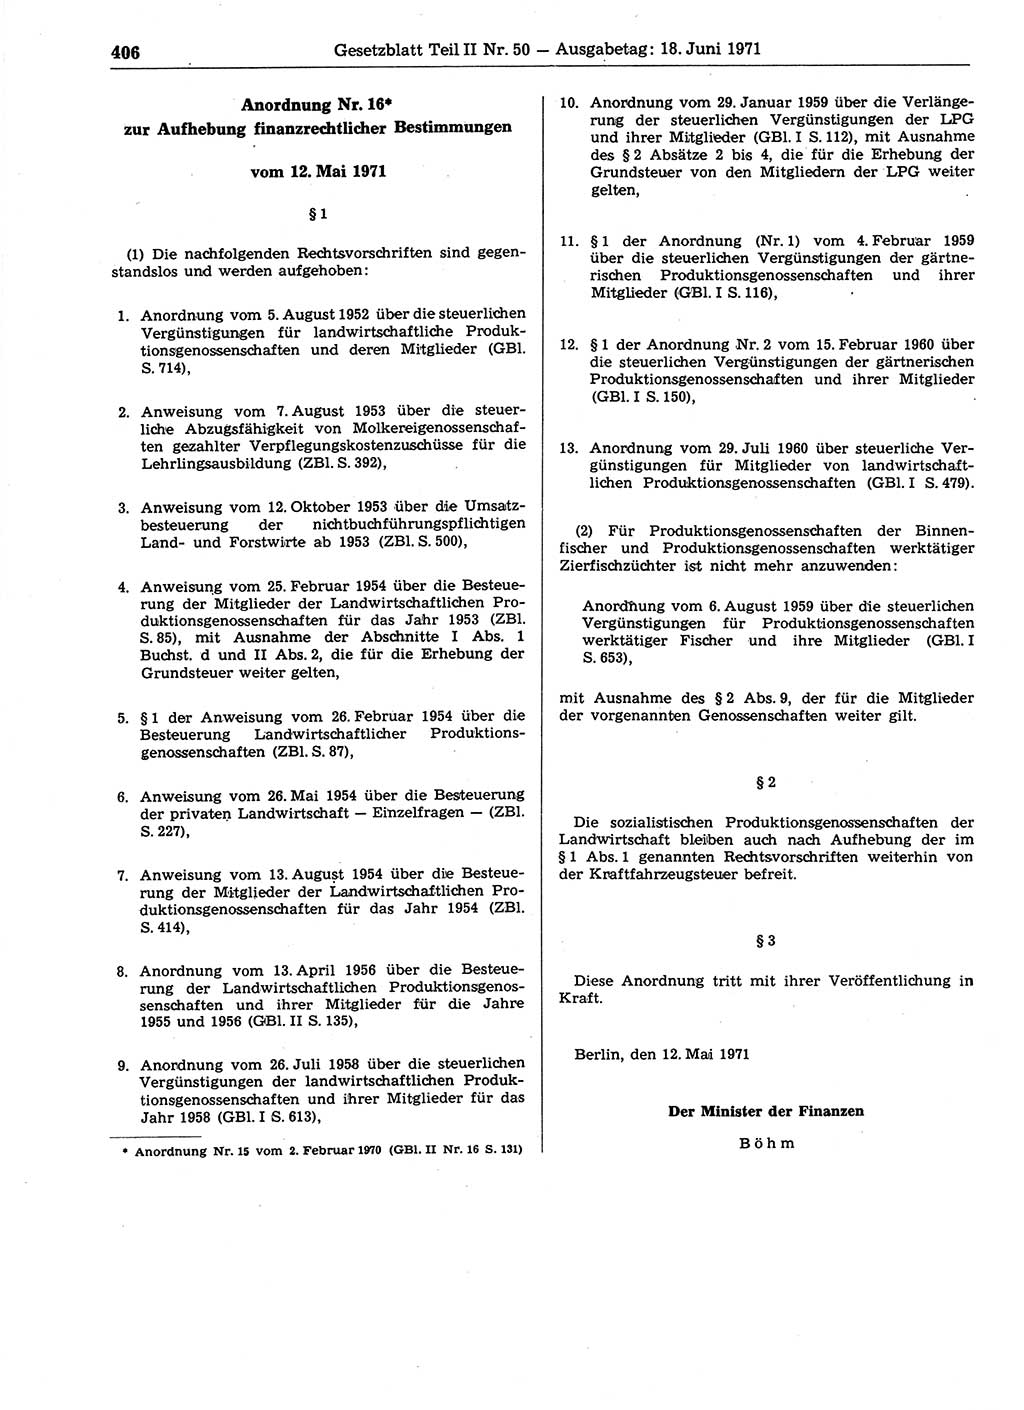 Gesetzblatt (GBl.) der Deutschen Demokratischen Republik (DDR) Teil ⅠⅠ 1971, Seite 406 (GBl. DDR ⅠⅠ 1971, S. 406)